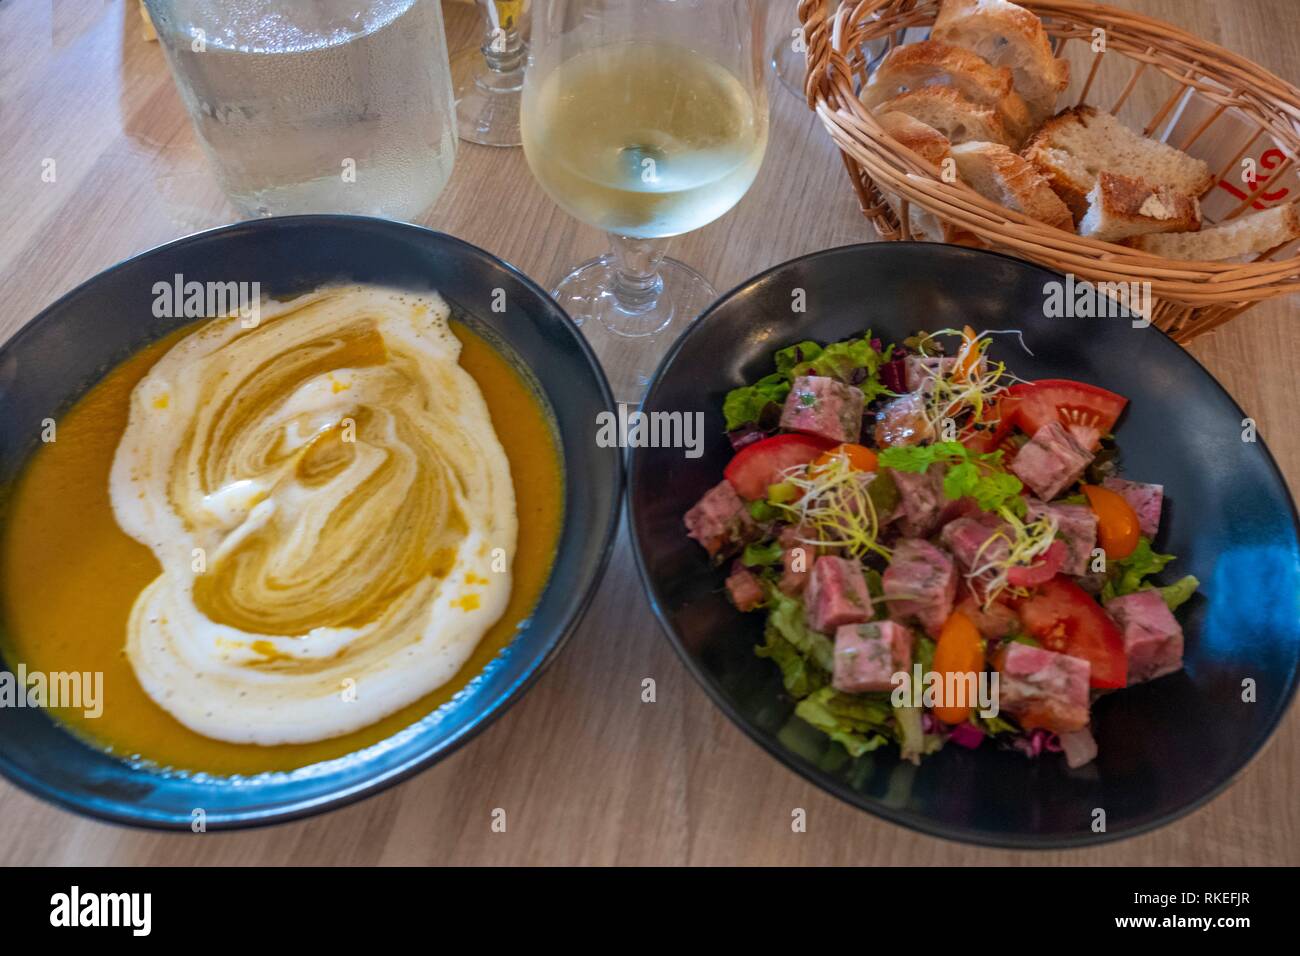 France. Food. Entrées: ''Soupe de legume a la créme fraiche'', and ''Salade de Museau de porc''. Stock Photo